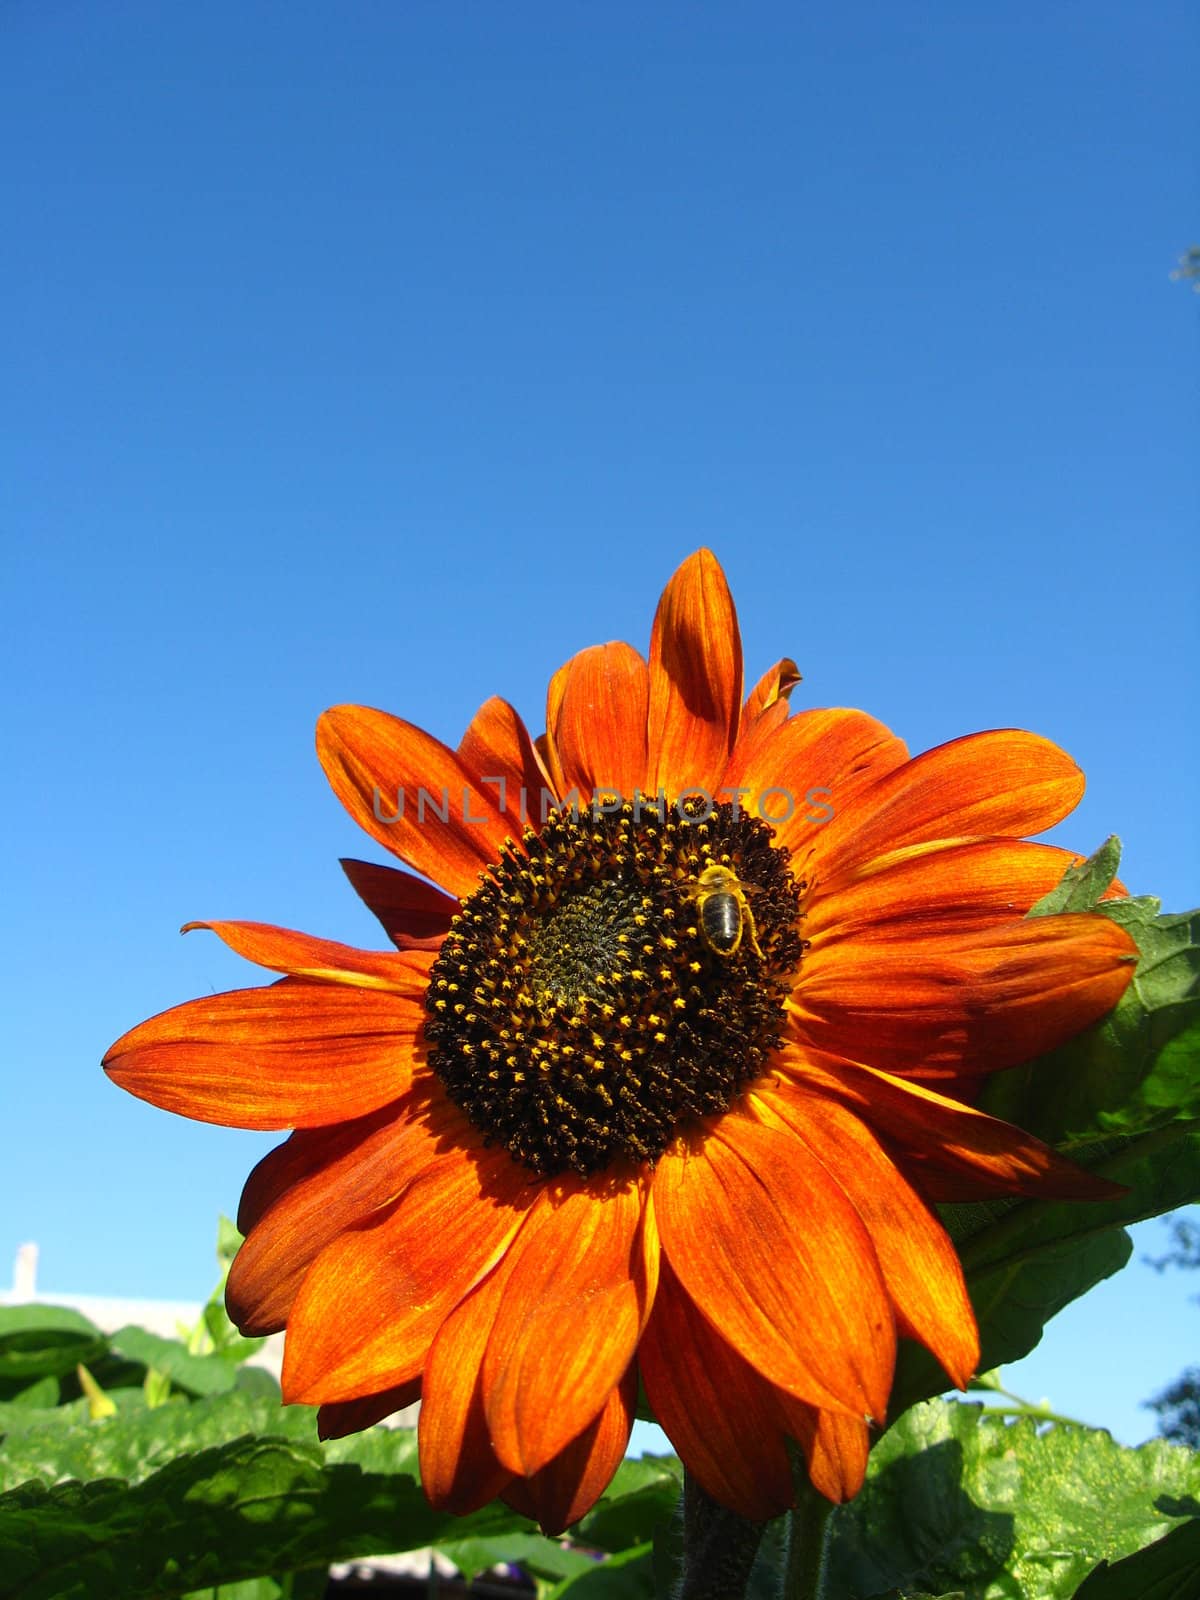 sunflower on the blue sky background by alexmak